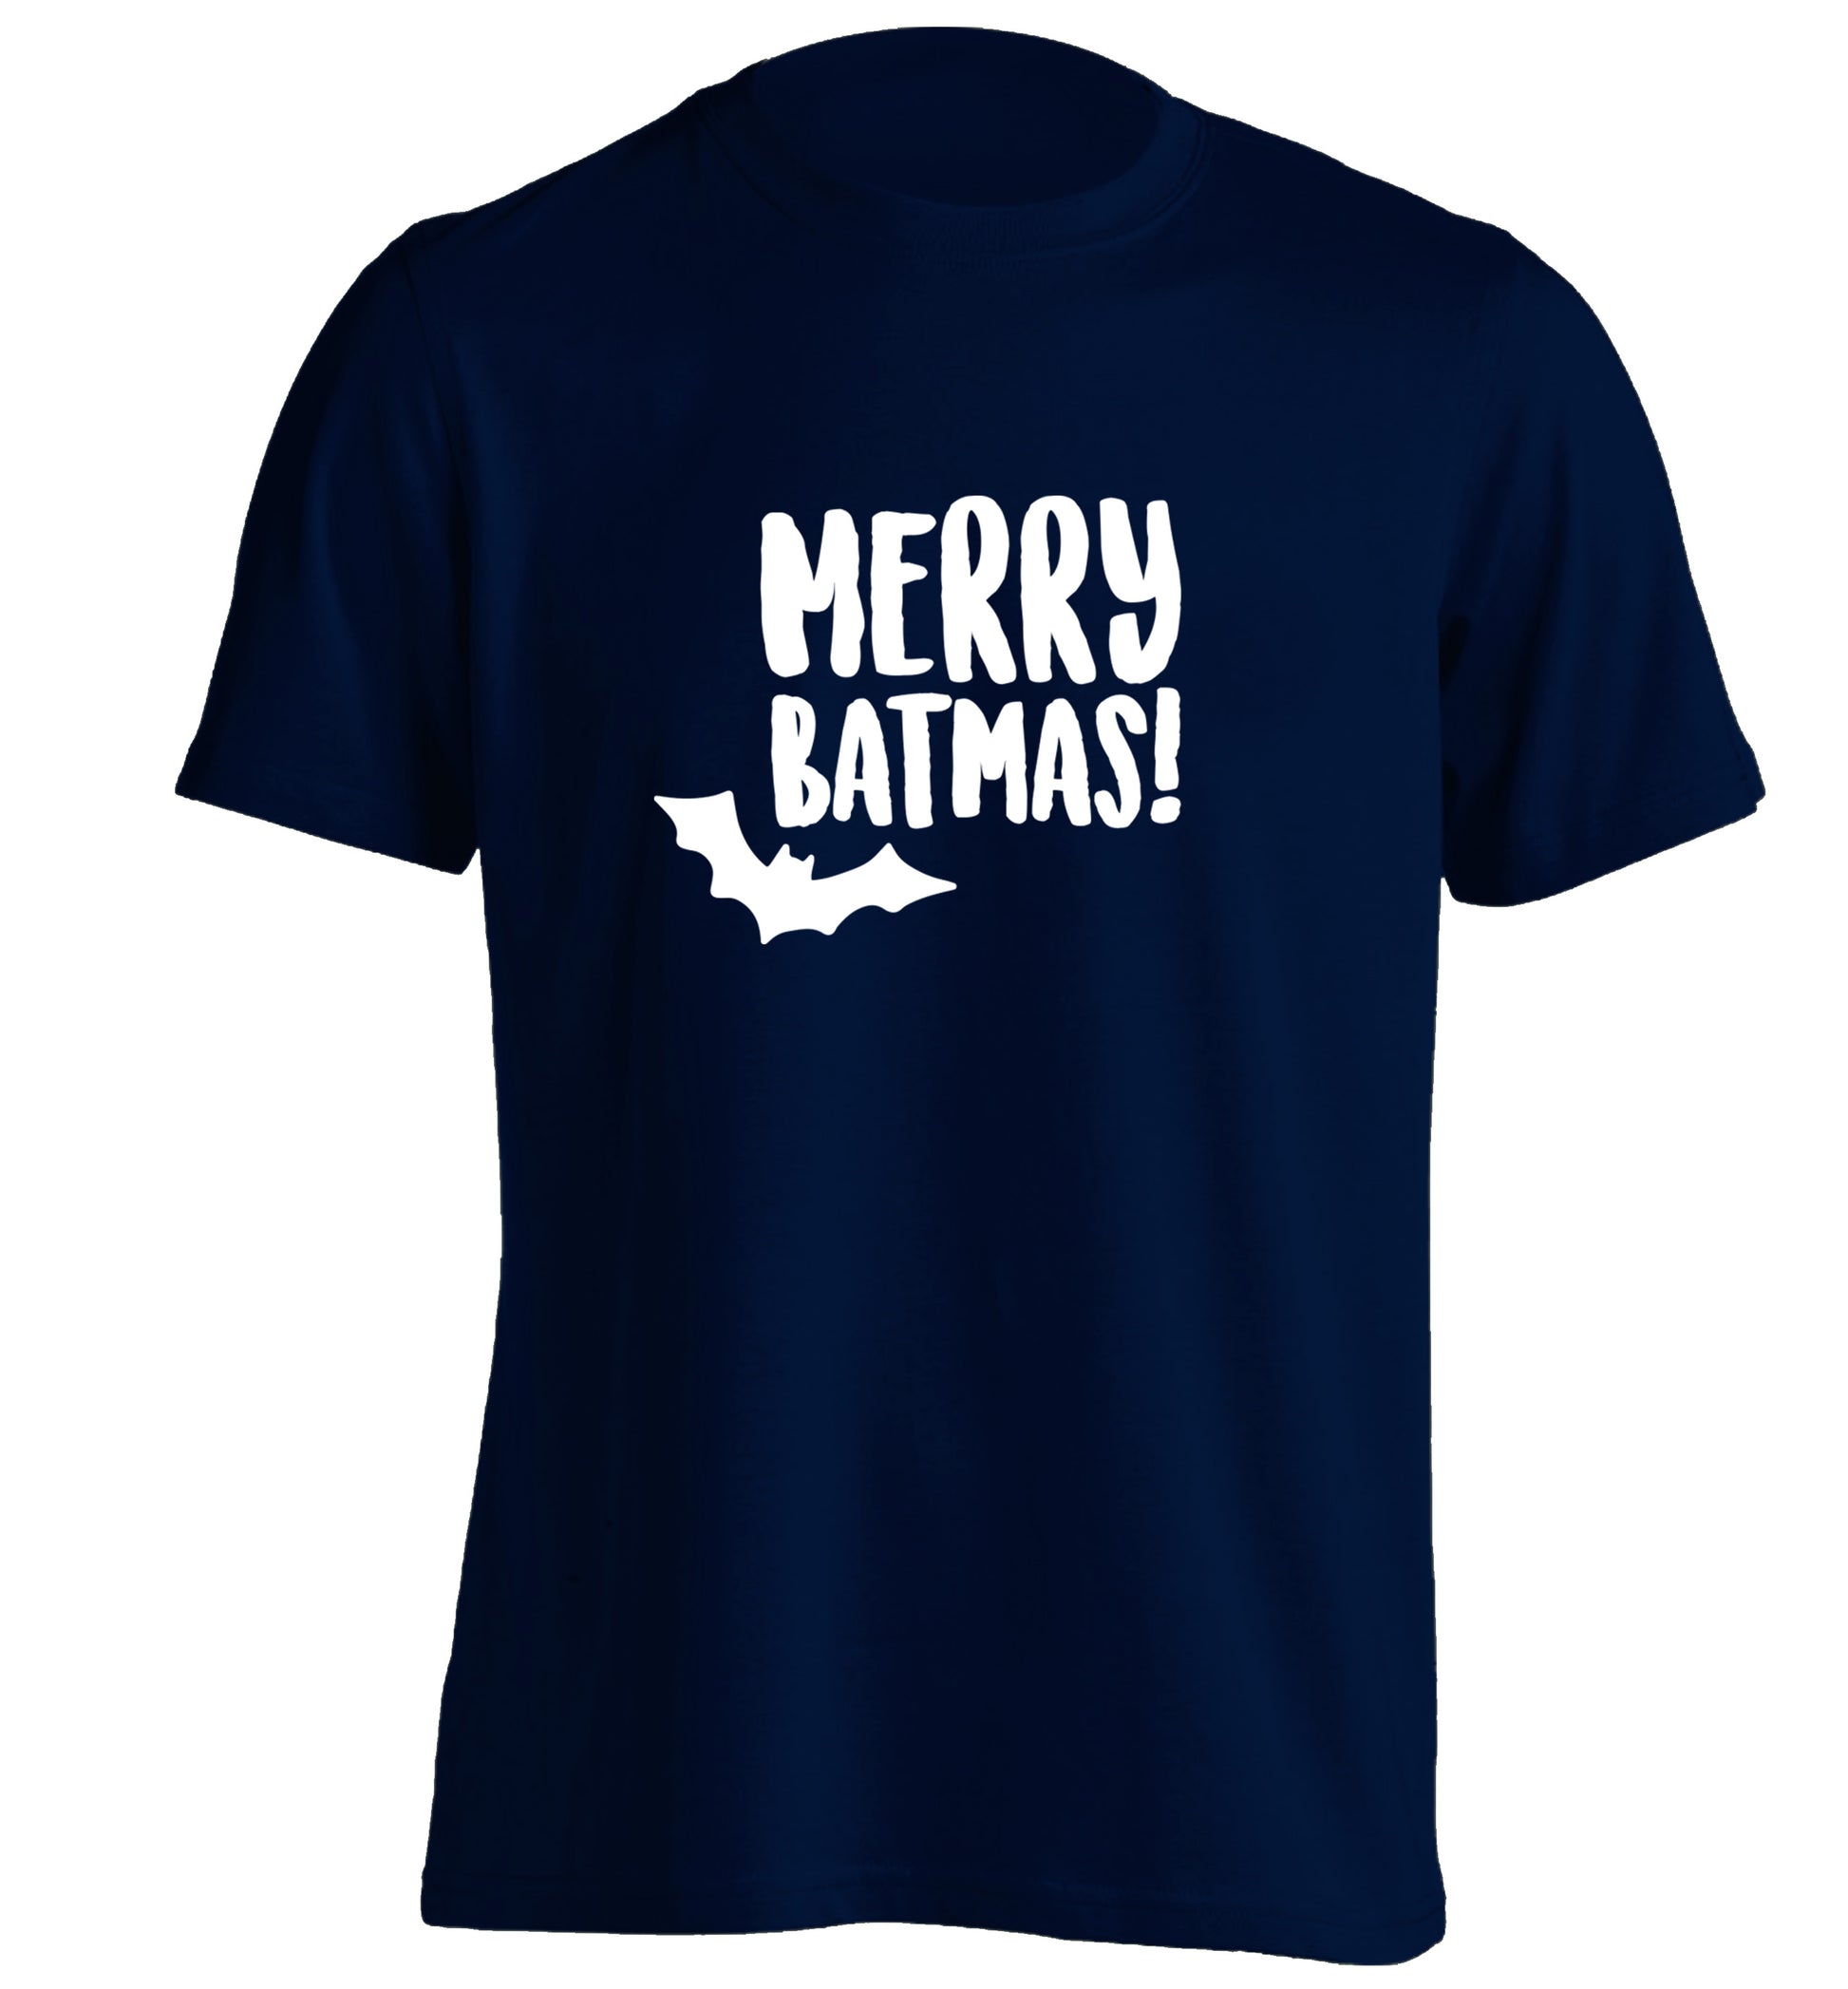 Merry Batmas adults unisex navy Tshirt 2XL